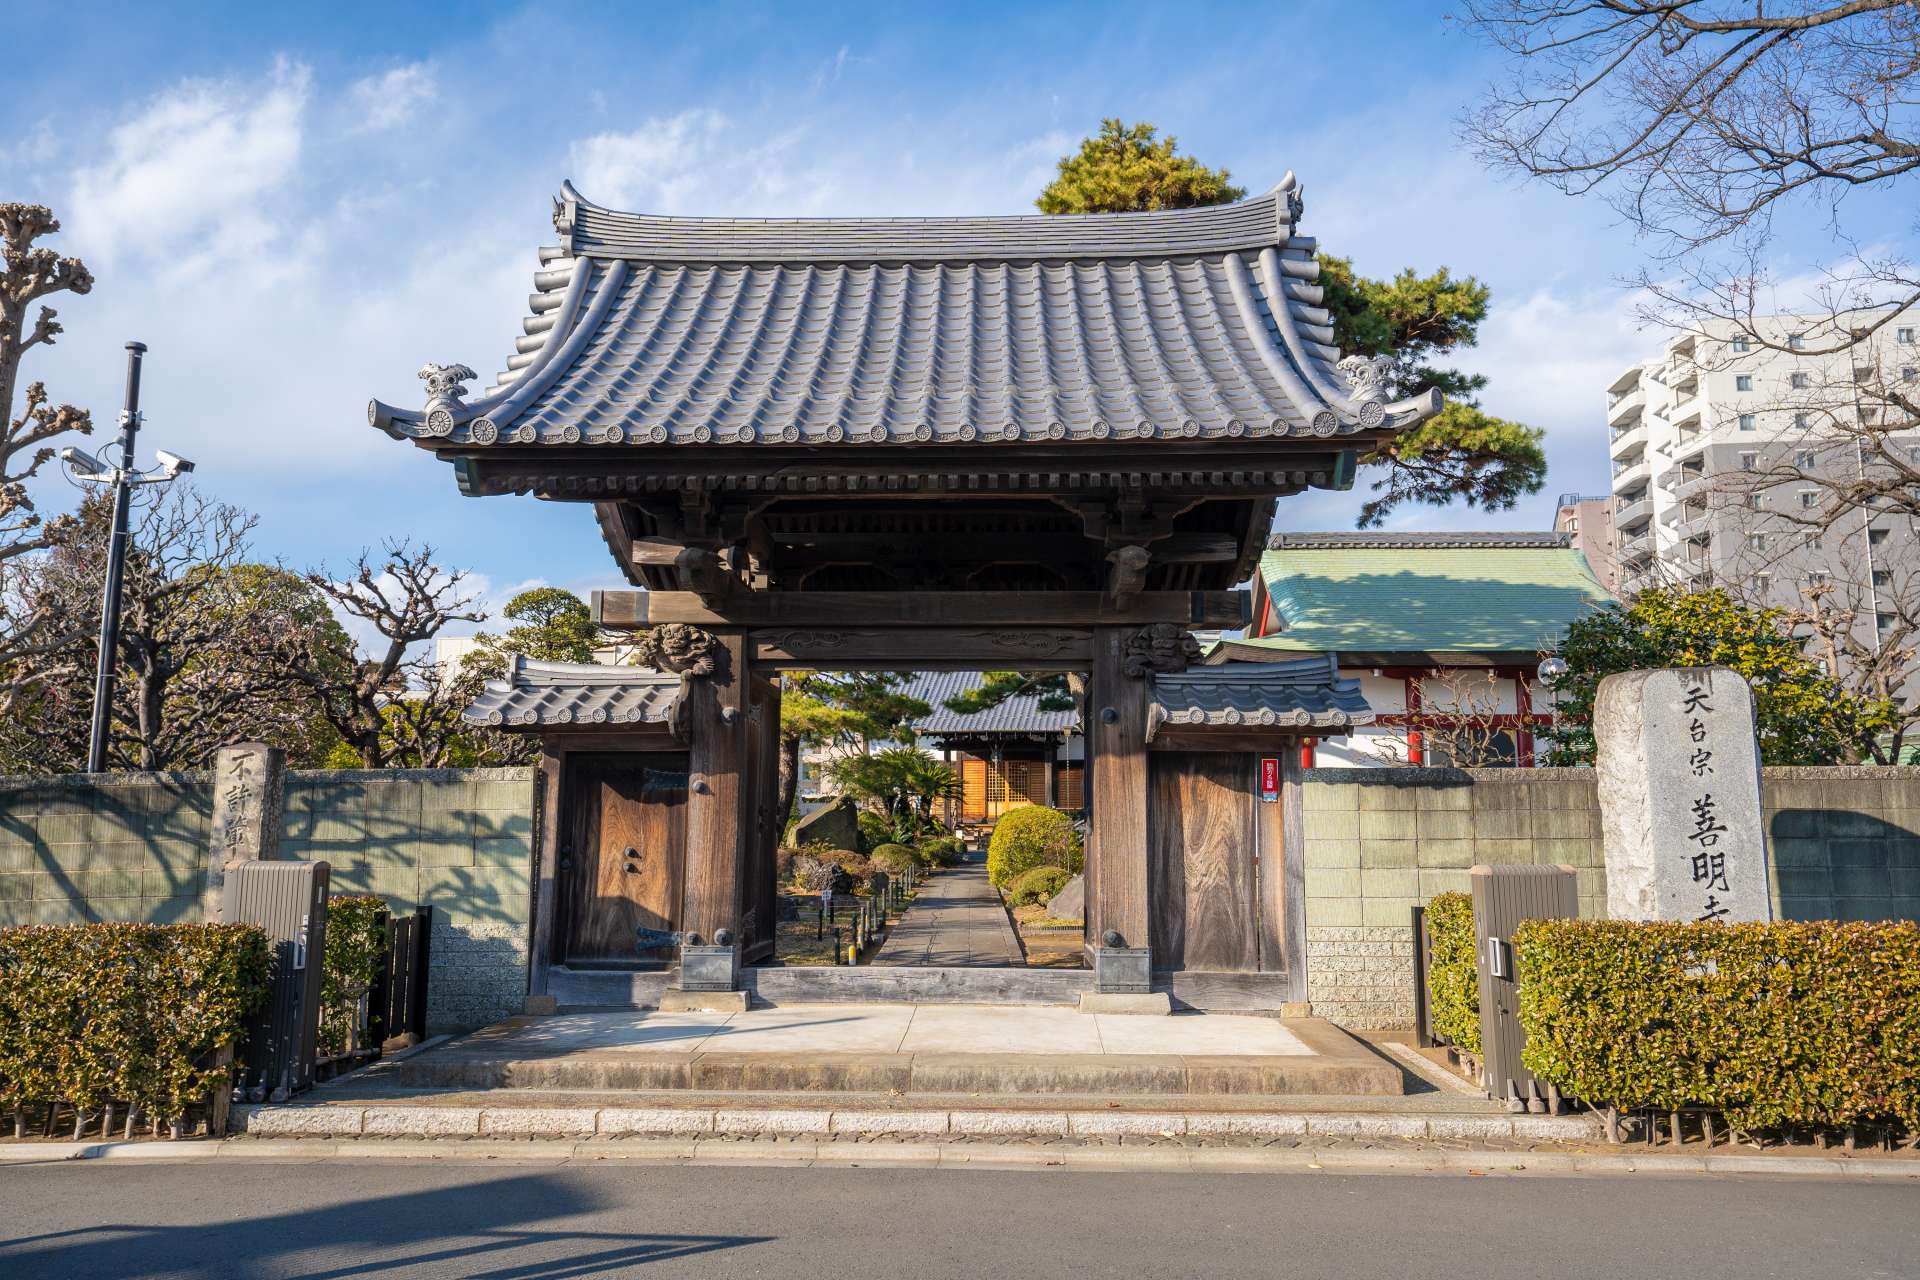 The Iori Shrine